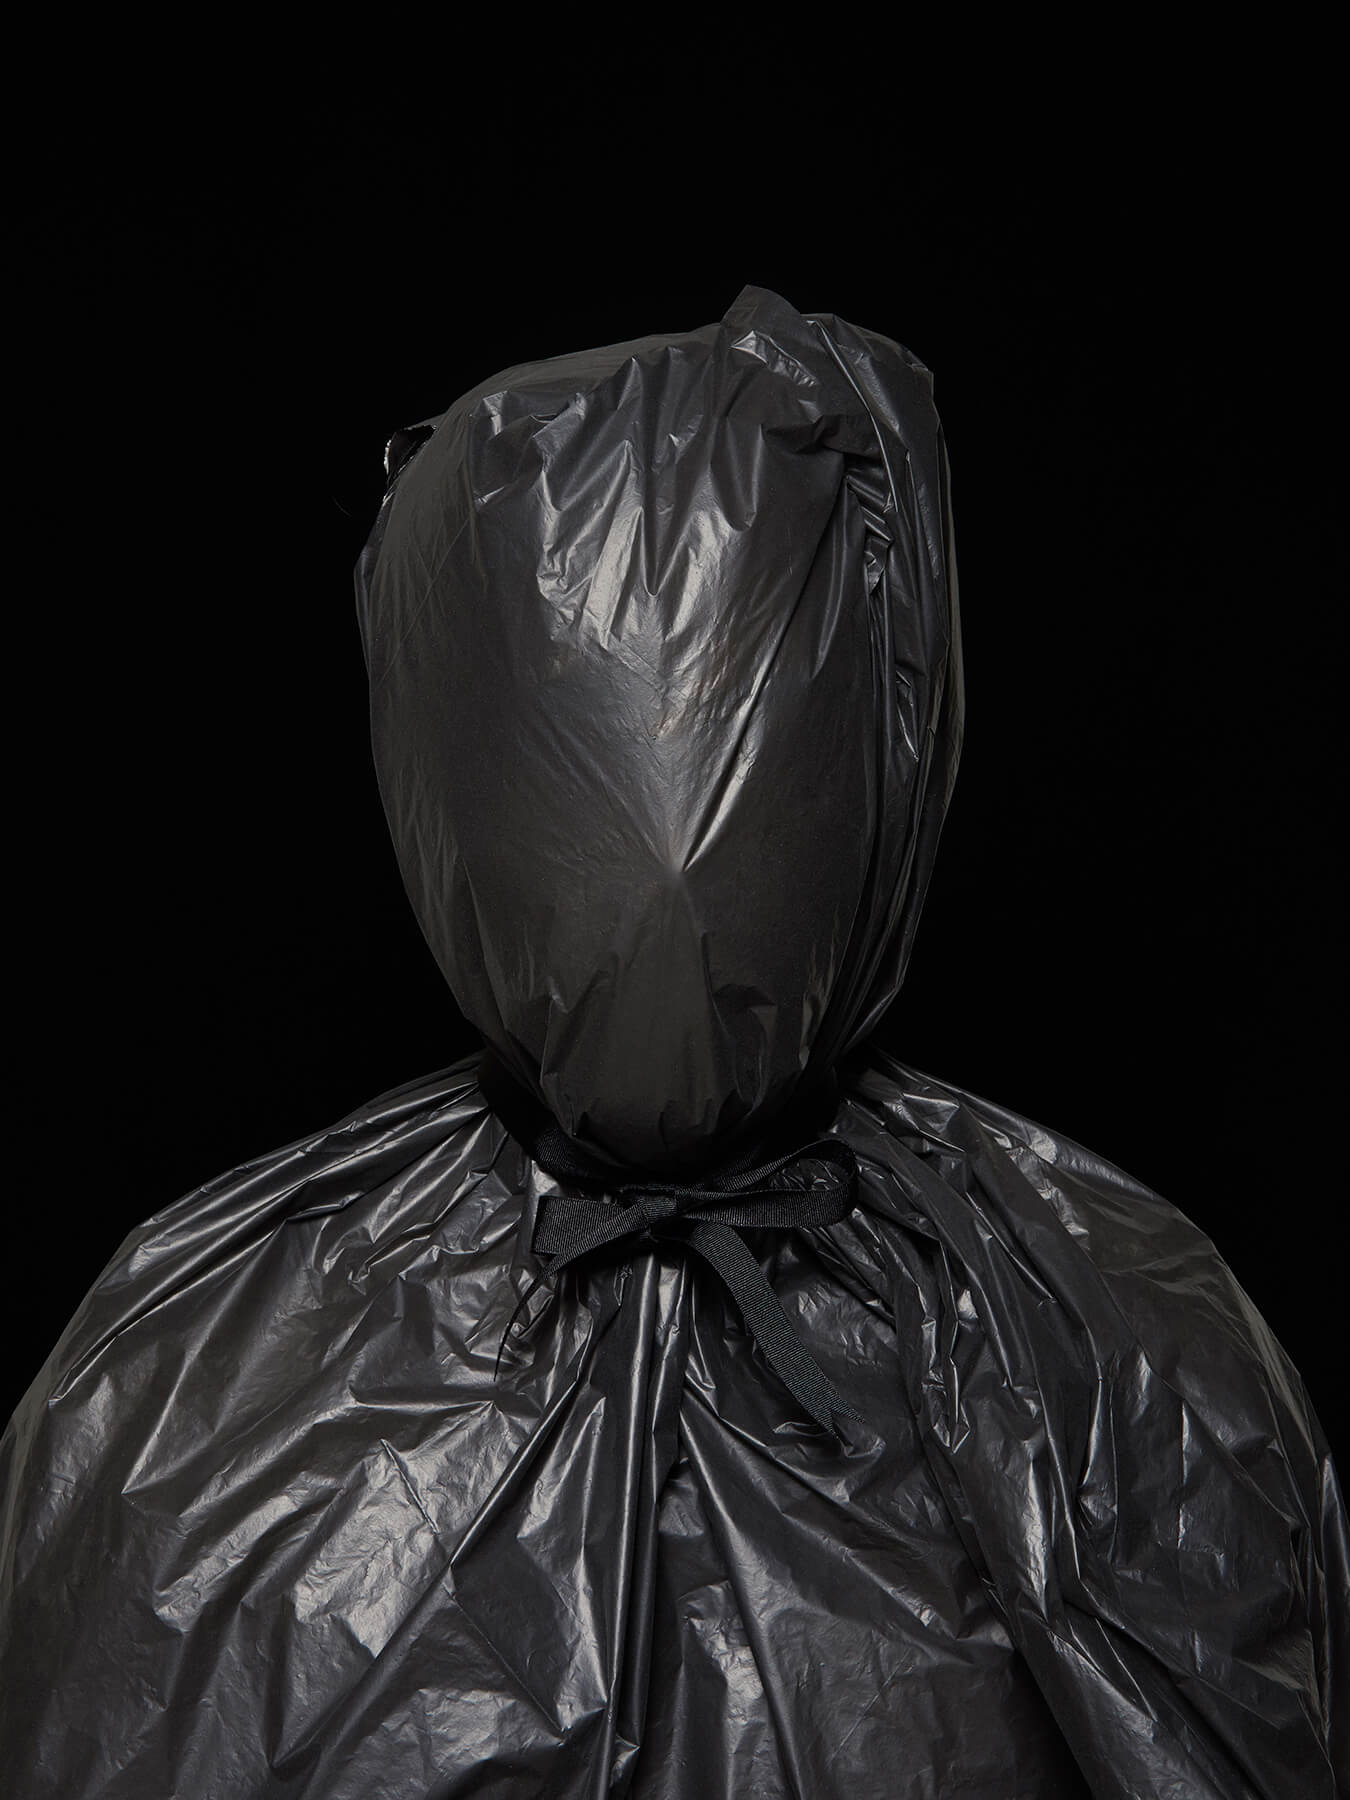 24 Nov 2017 Derong is wrapped in black garbage bags